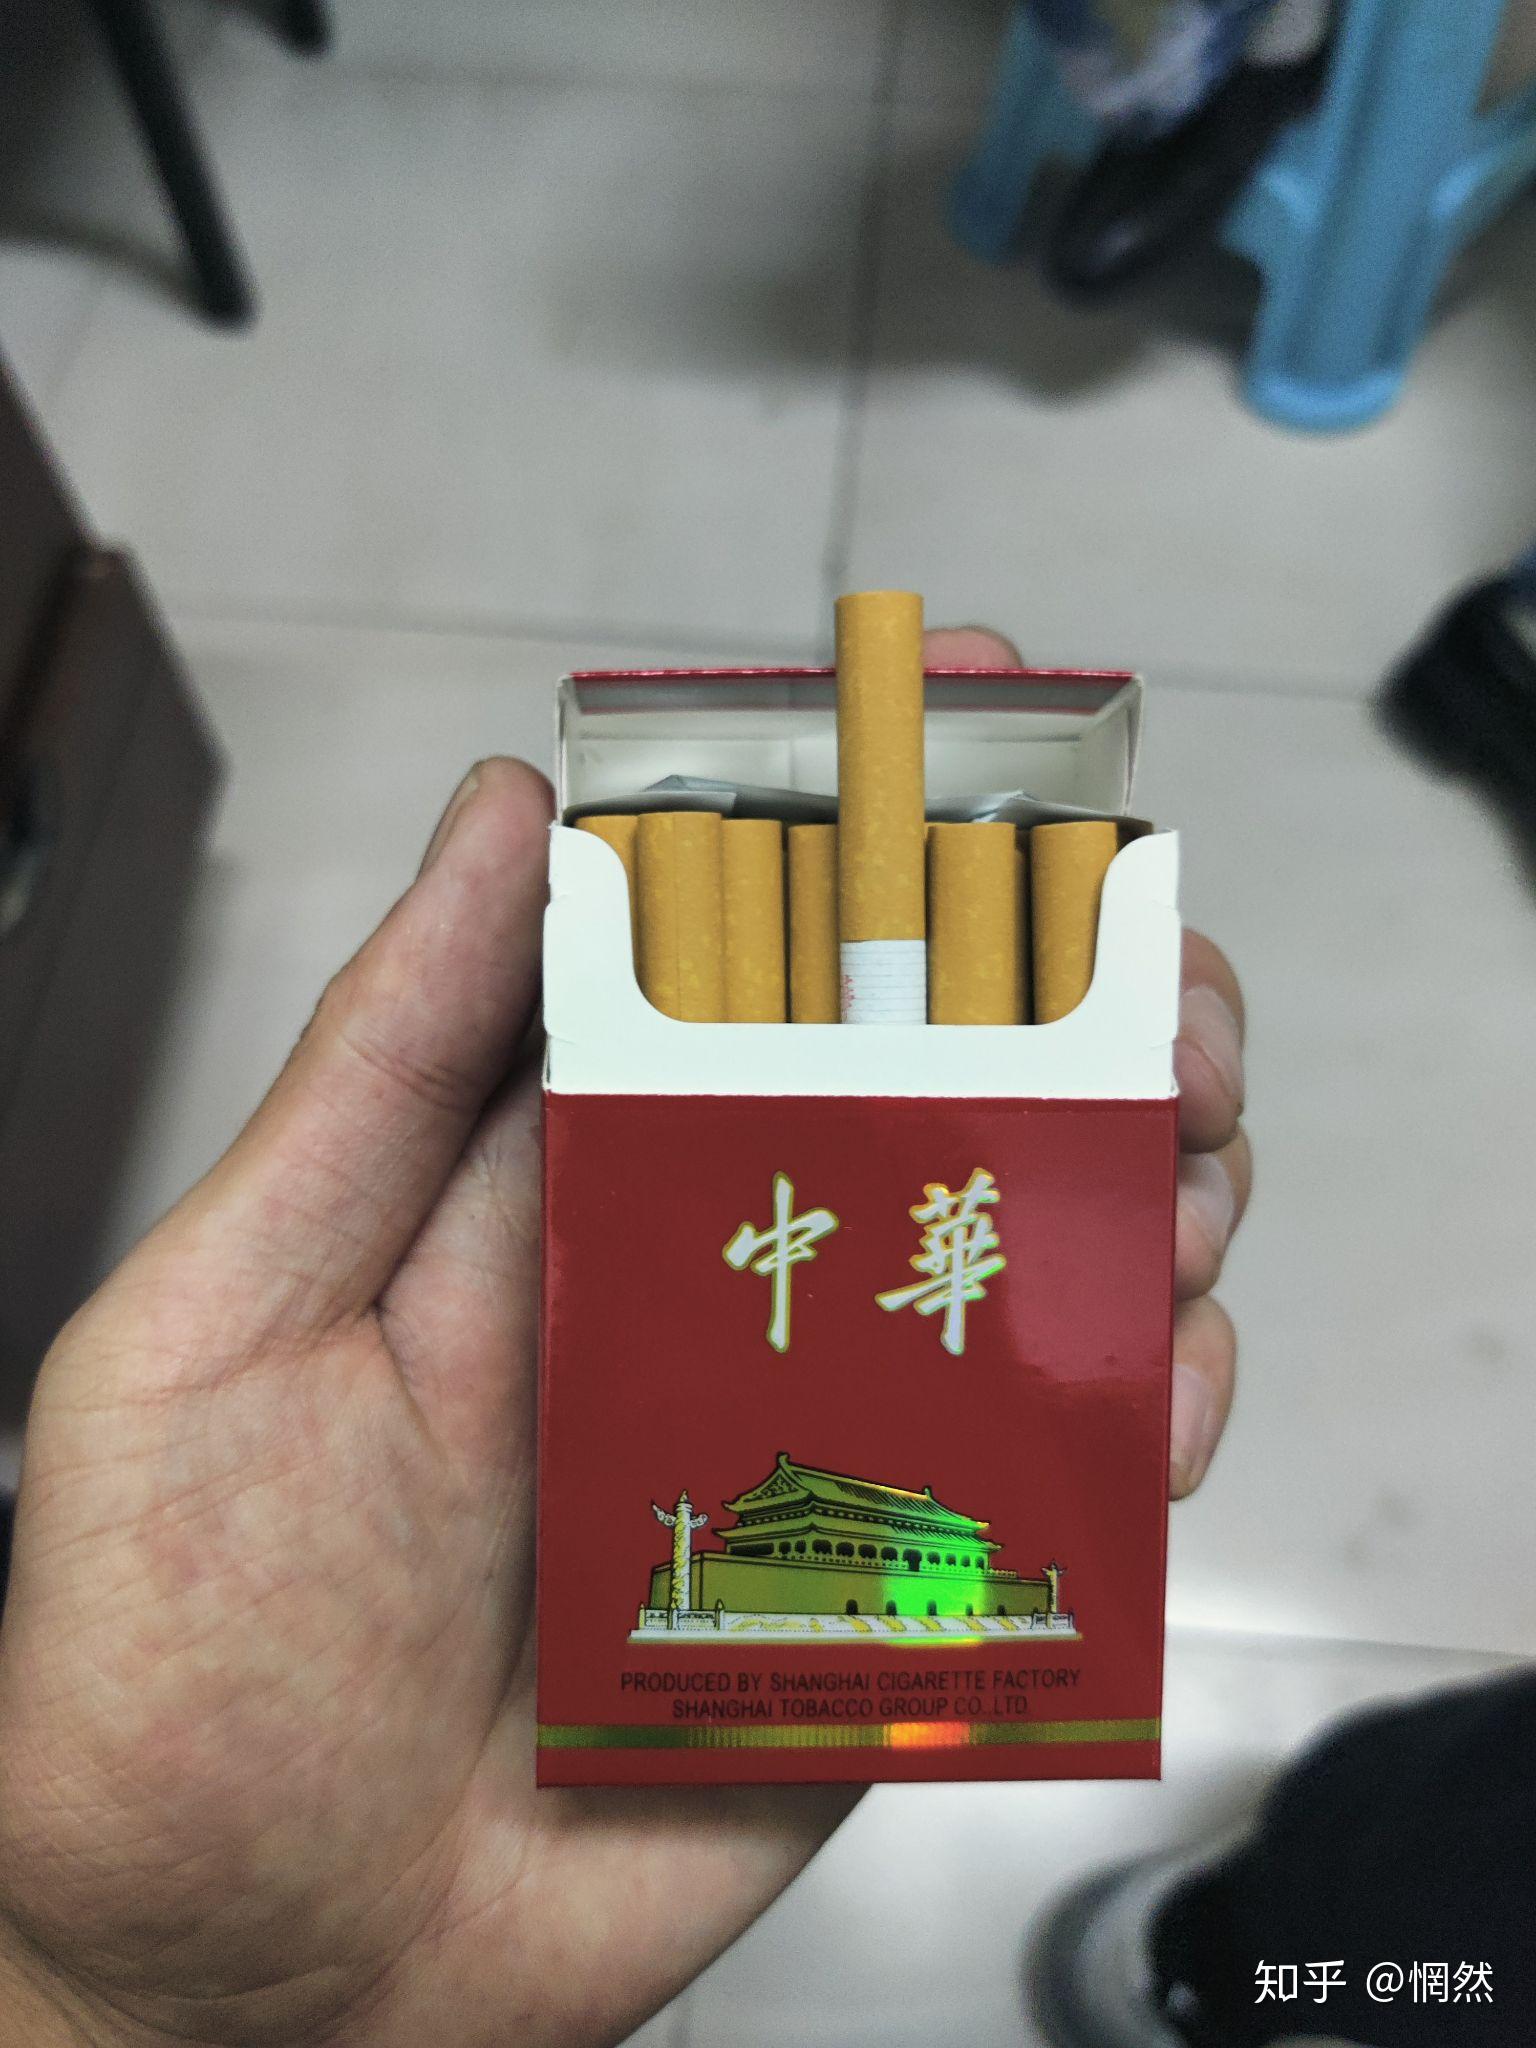 中华烟照片真实图片